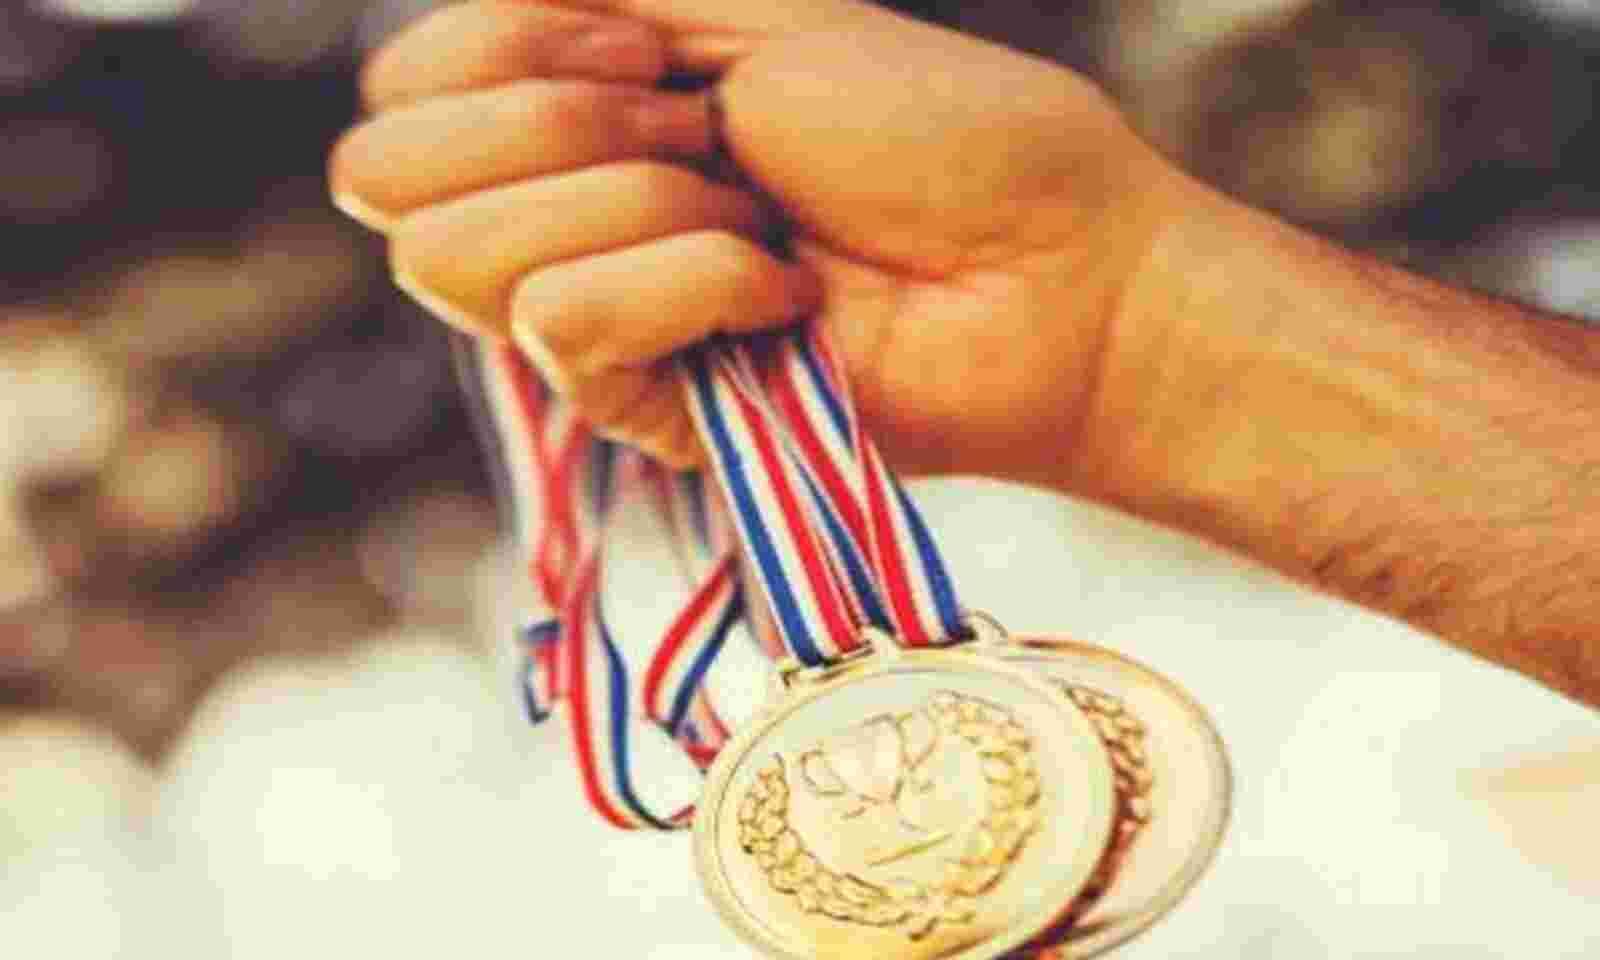 नवगछिया के युवक को दिल्ली में सम्मानित किया गया.. प्रतियोगिता में मिला कांस्य पदक